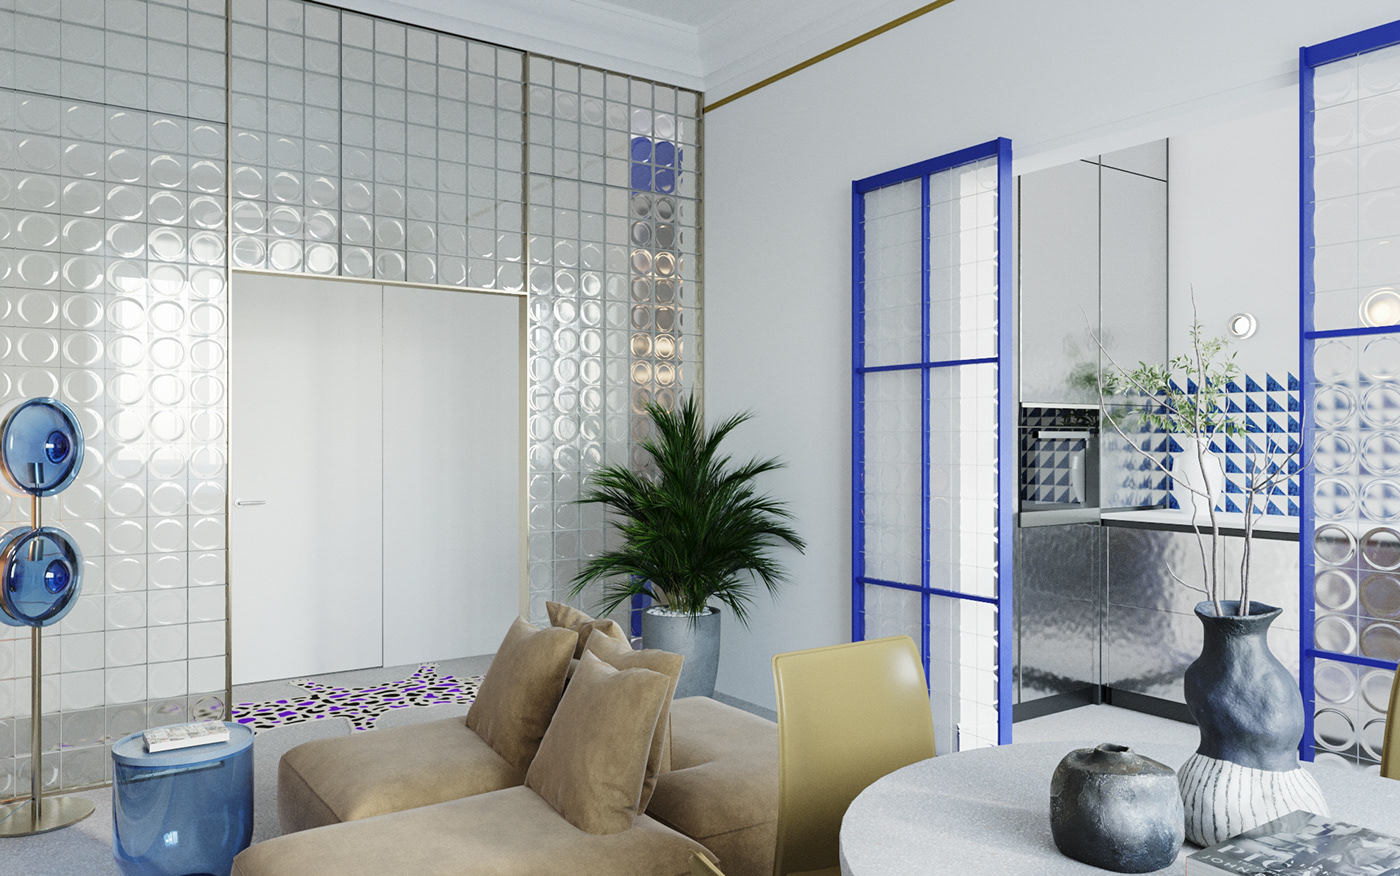 3dmodeling 3dsmax architecture bedroom Interior interior design  kitchen living room Render visualization